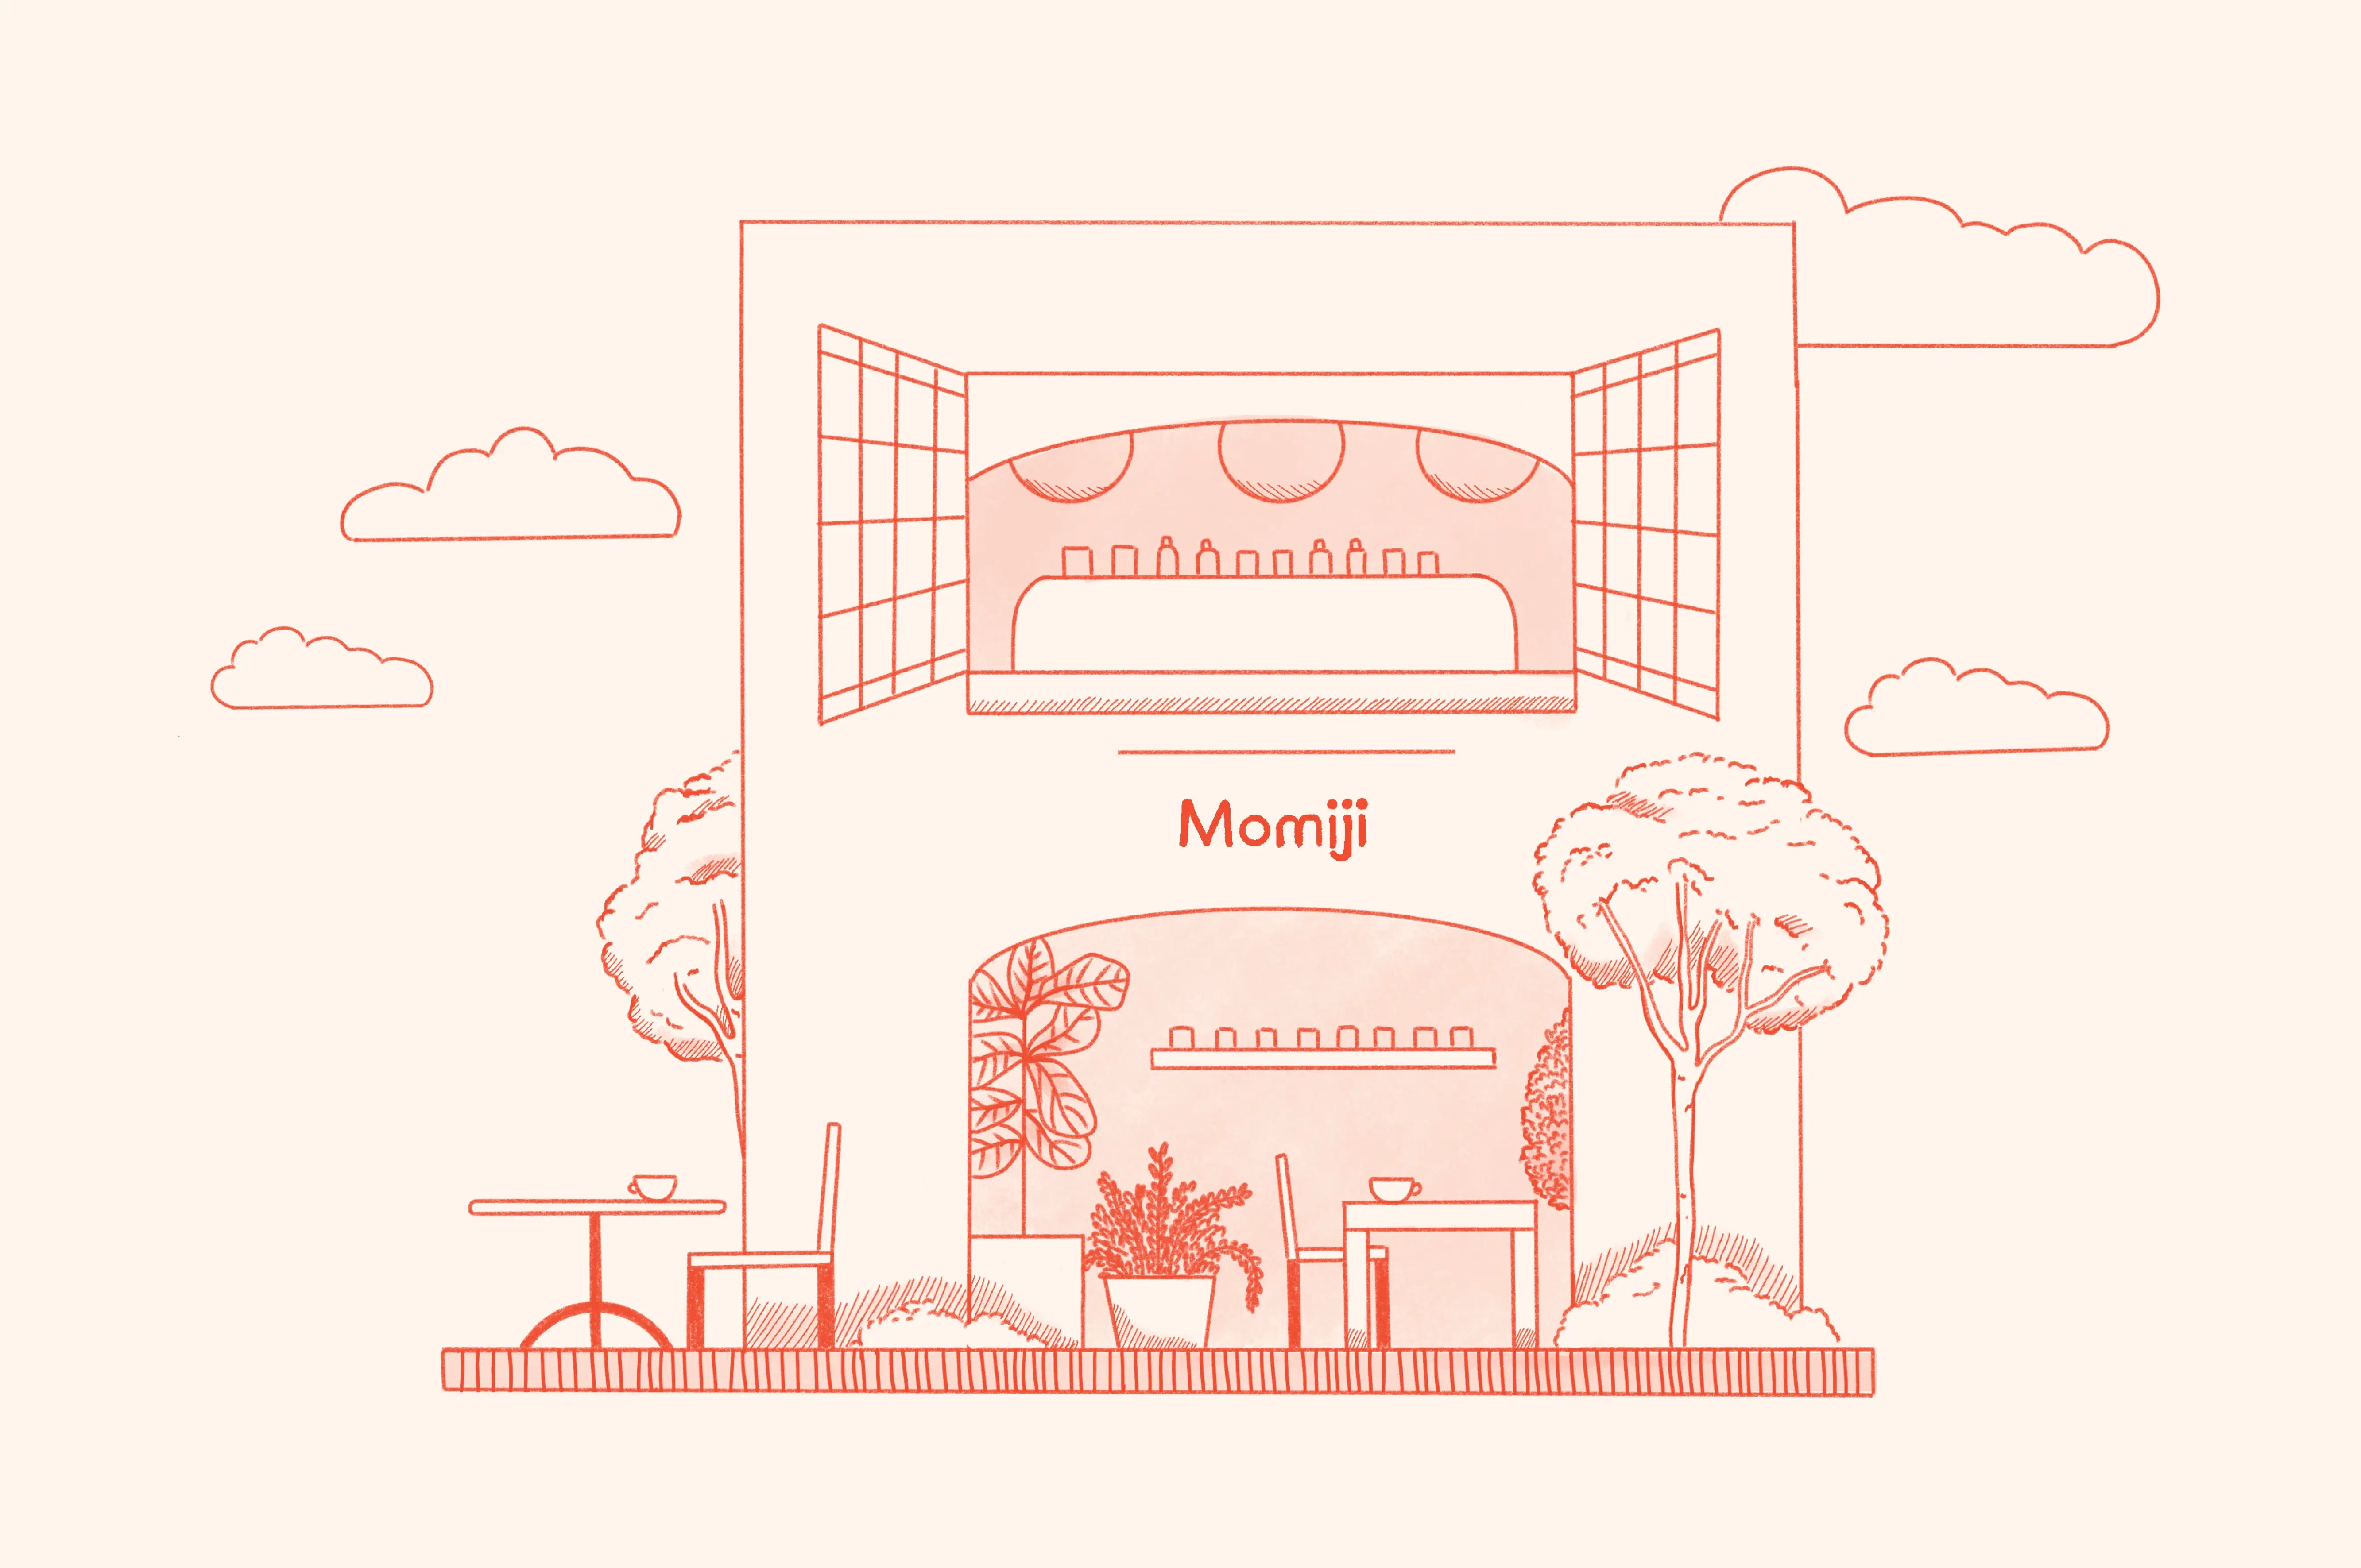 Momiji Café
